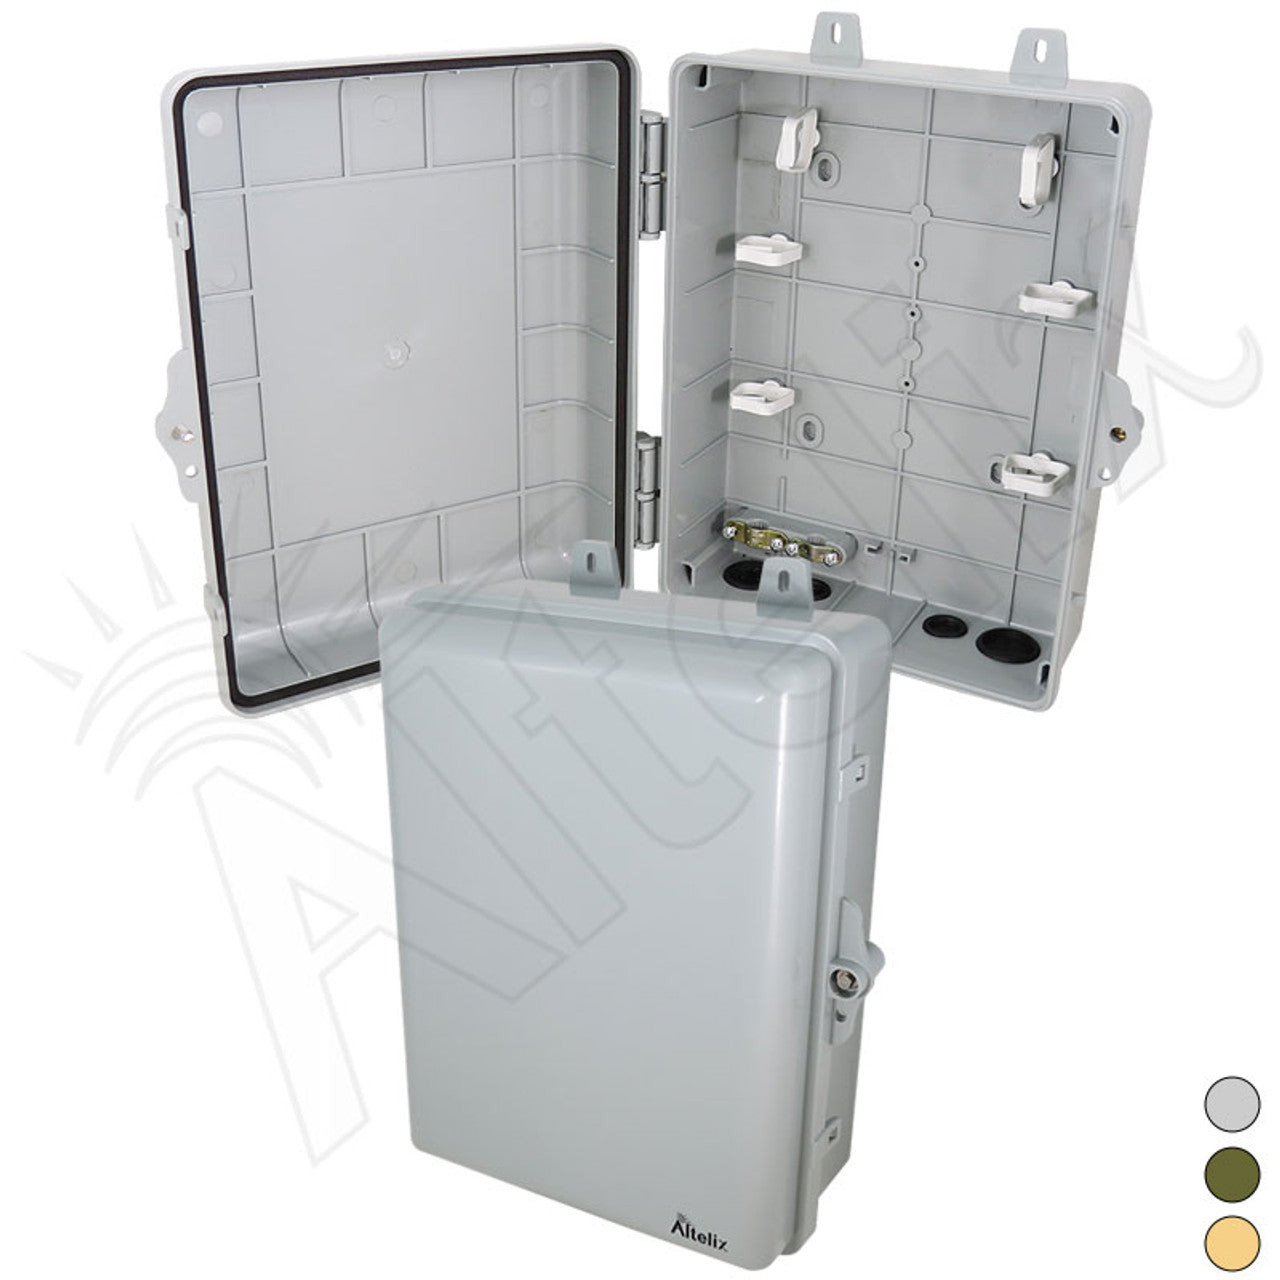 Altelix 12x9x5 IP66 NEMA 4X PC+ABS Weatherproof Utility Box with Hinged Door